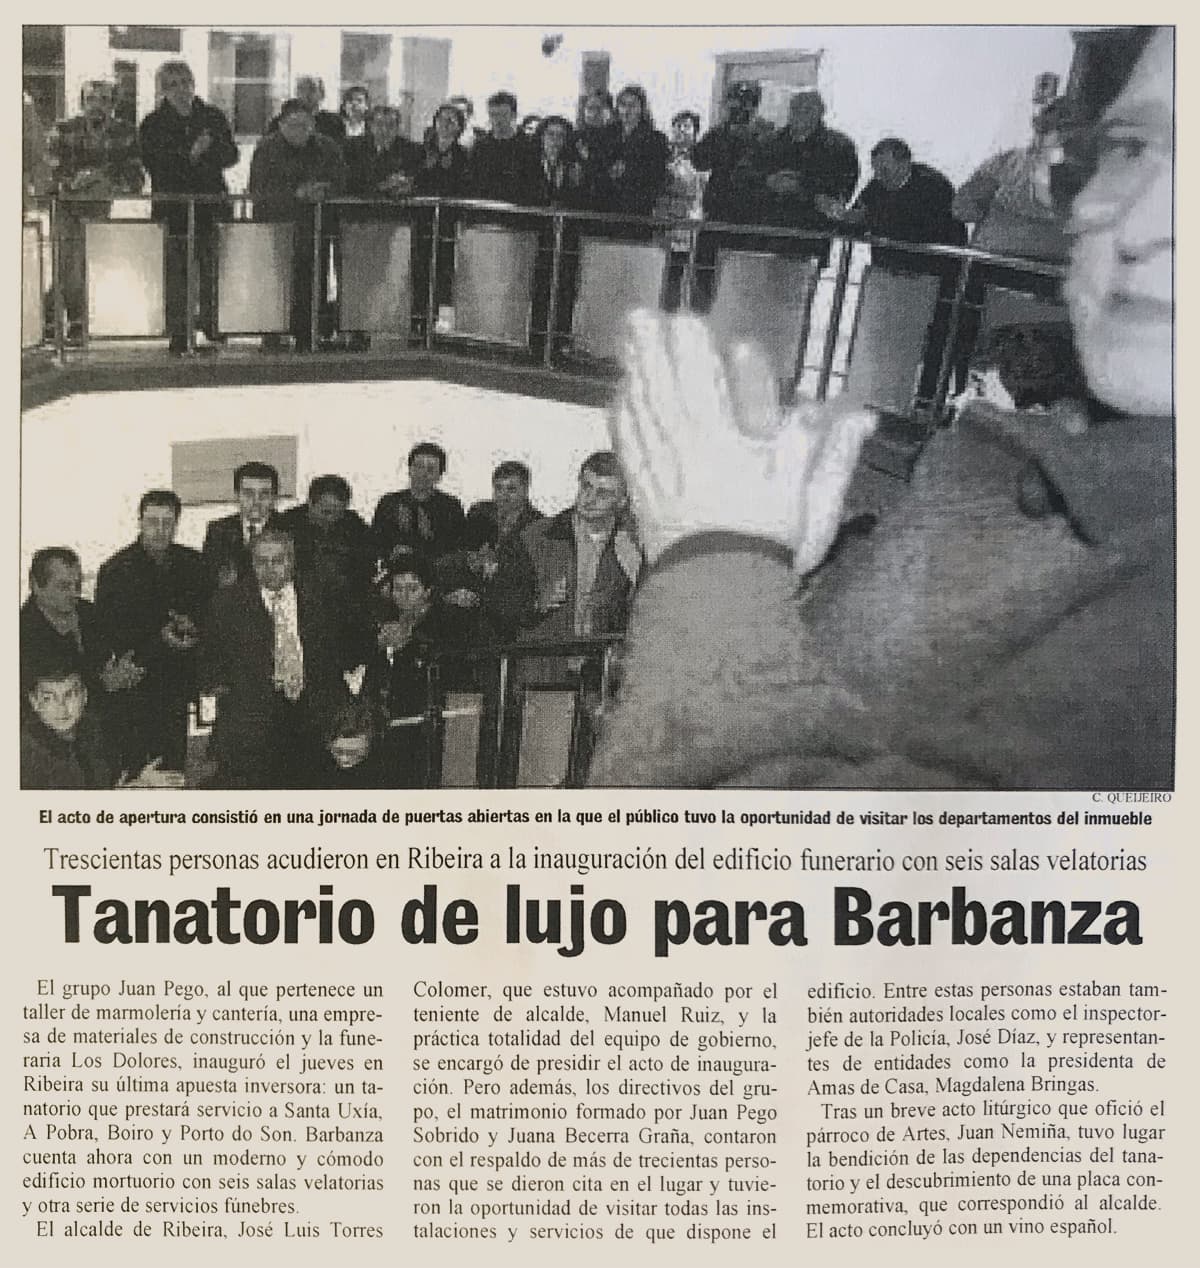 Noticia en periódico sobre Tanatorio-Funeraria Los Dolores